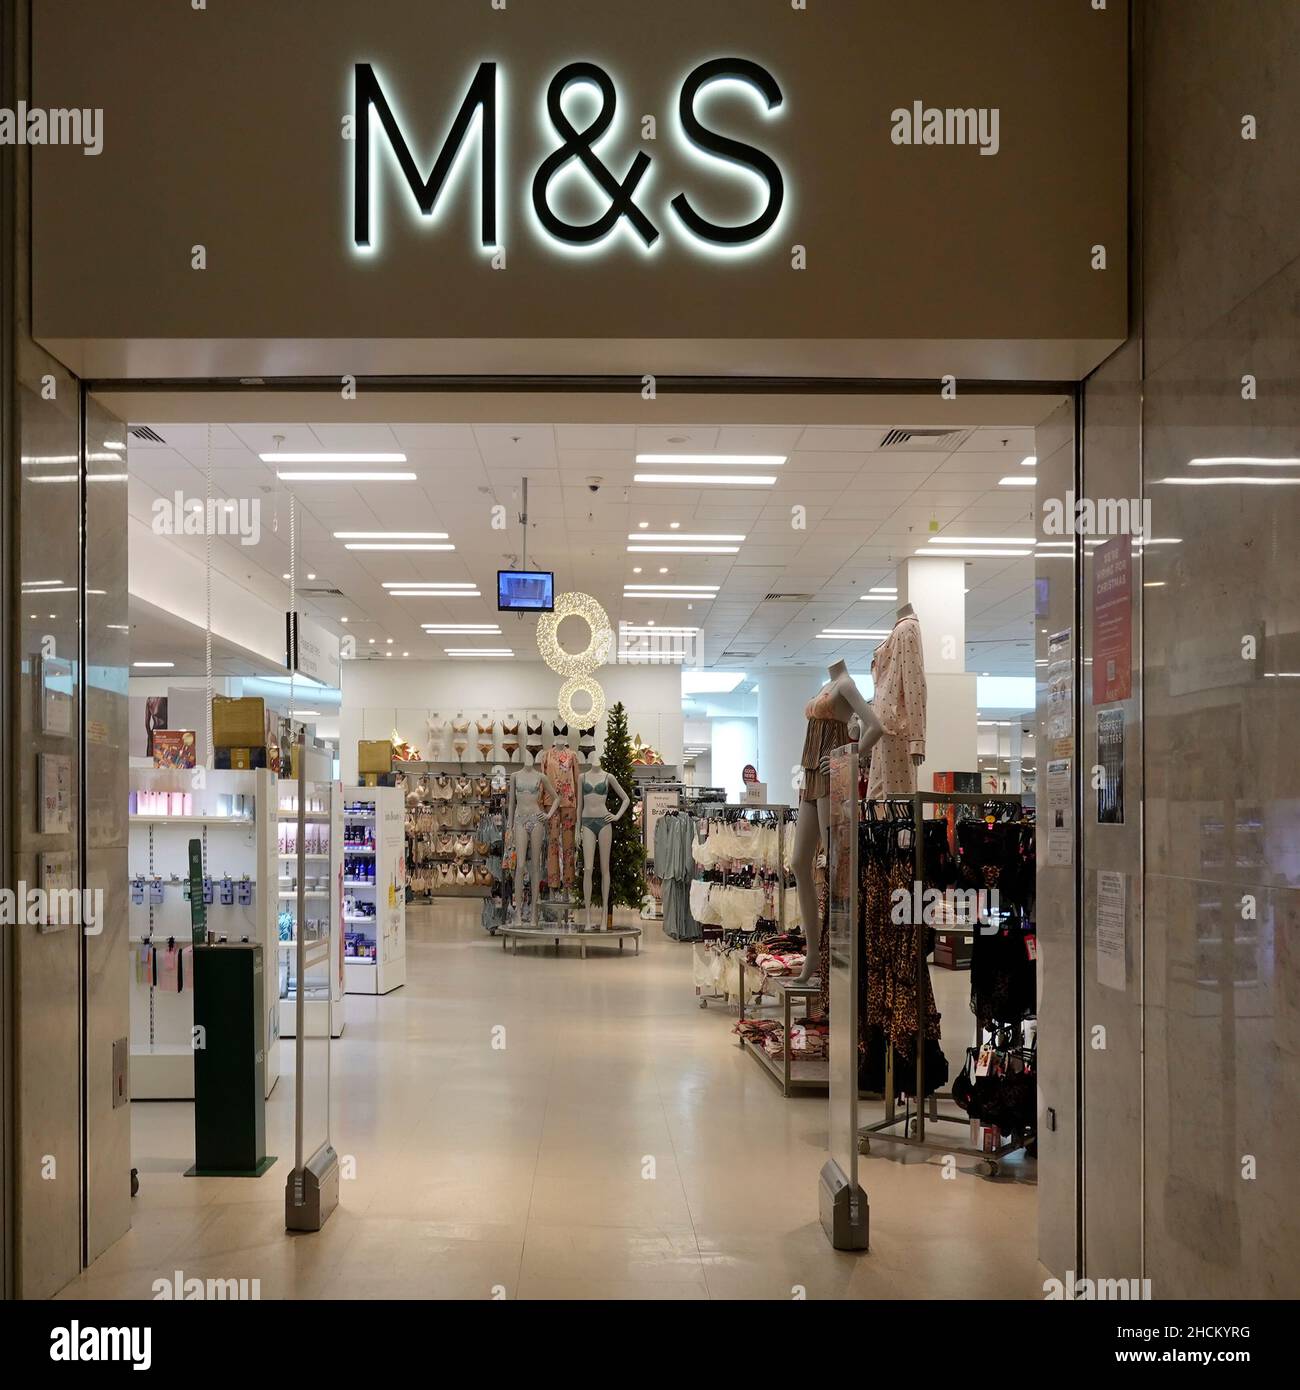 M&S BUSINESS SIGN & LOGO sobre la entrada del departamento de moda para señoras Marks and Spencer en la tienda de ropa del centro comercial Lakeside Thurrock UK Foto de stock